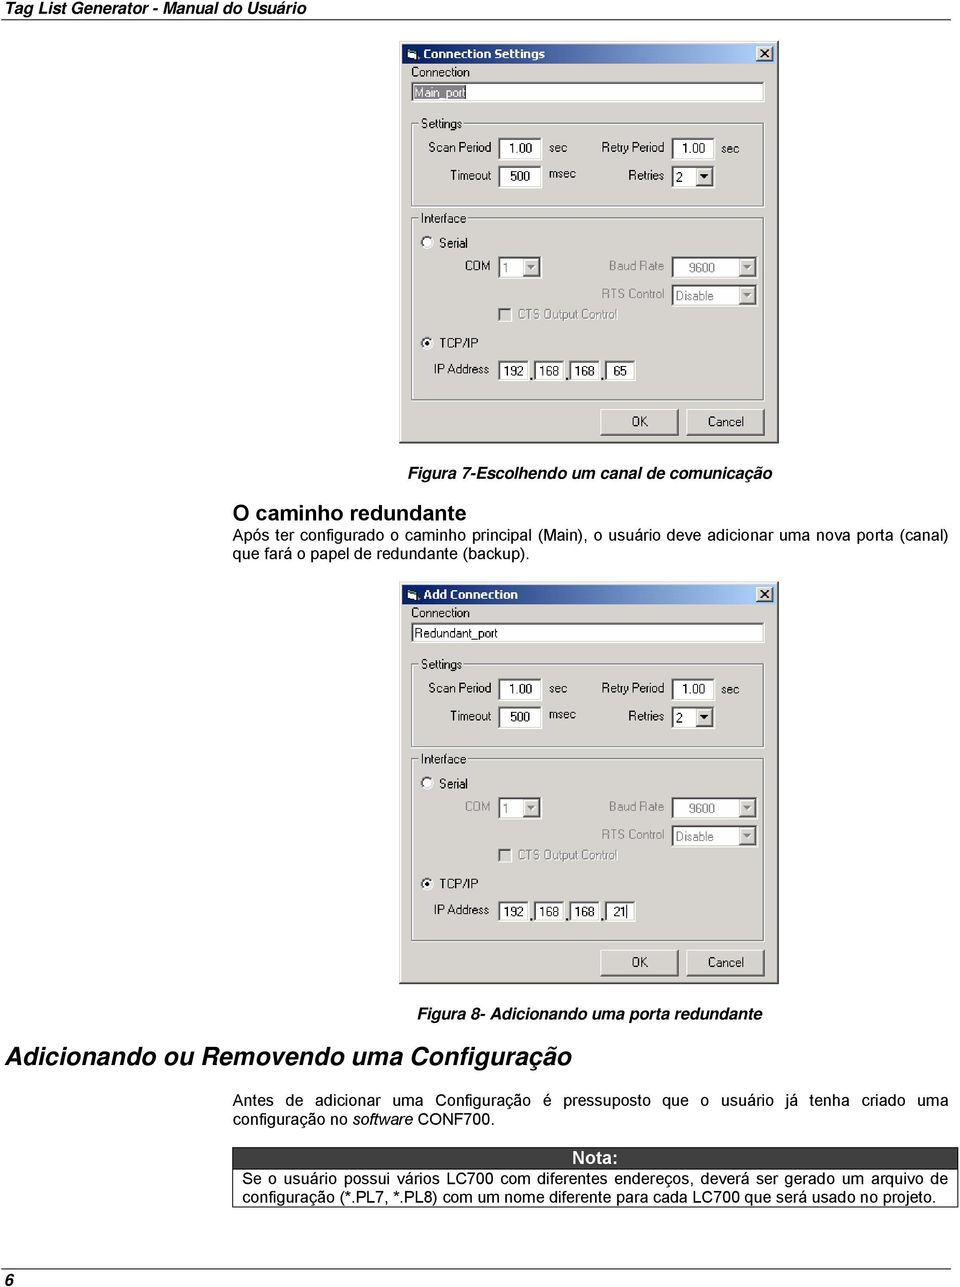 Adicionando ou Removendo uma Configuração Figura 8- Adicionando uma porta redundante Antes de adicionar uma Configuração é pressuposto que o usuário